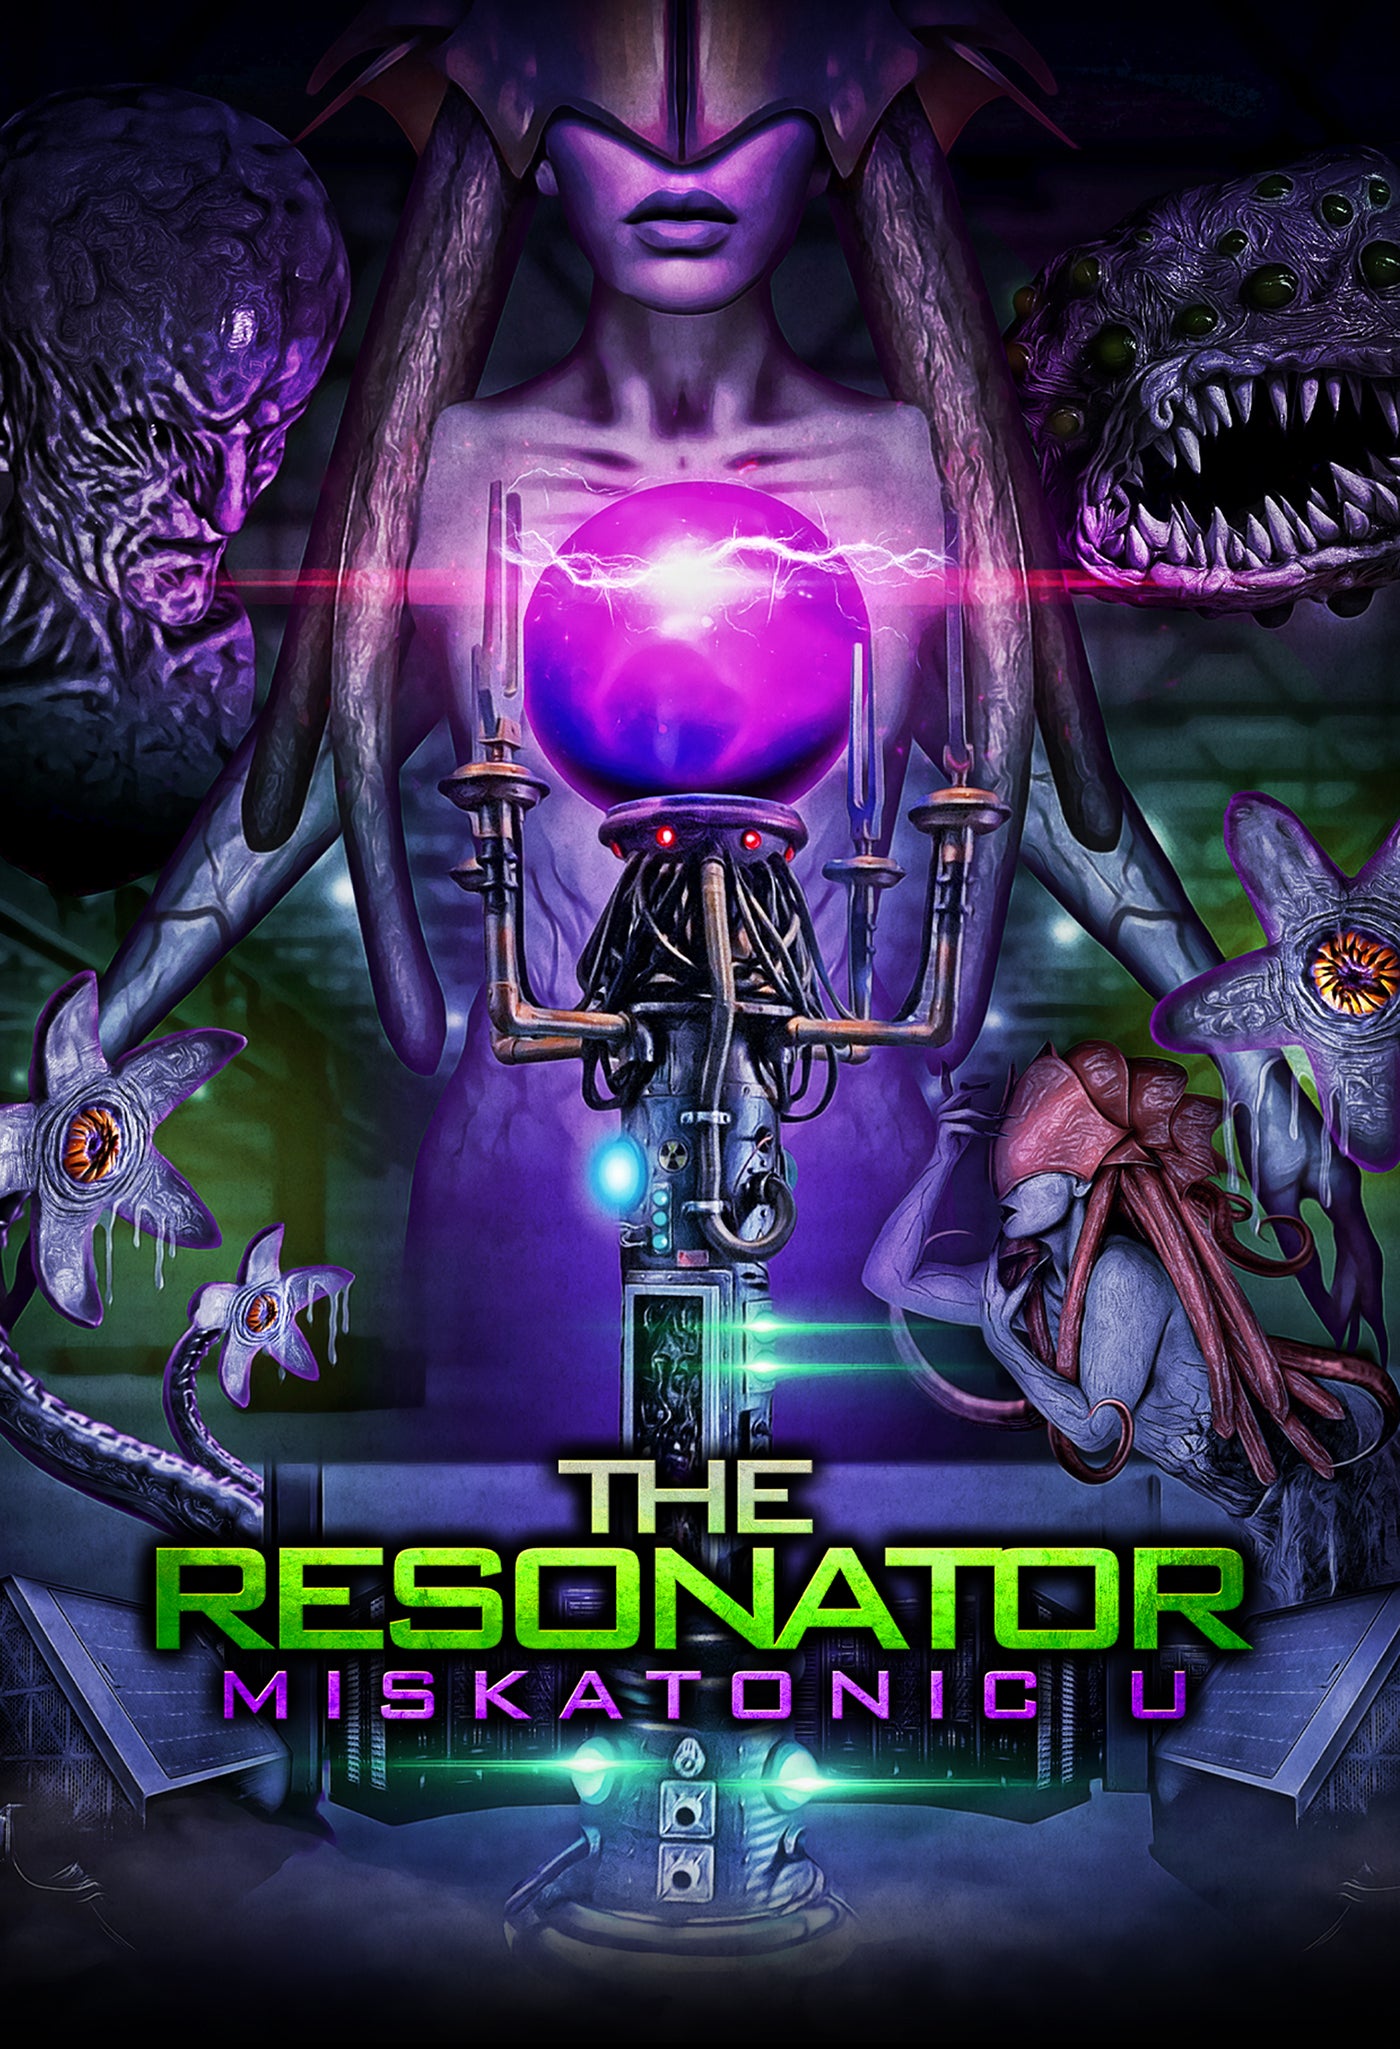 THE RESONATOR: MISKATONIC U DVD